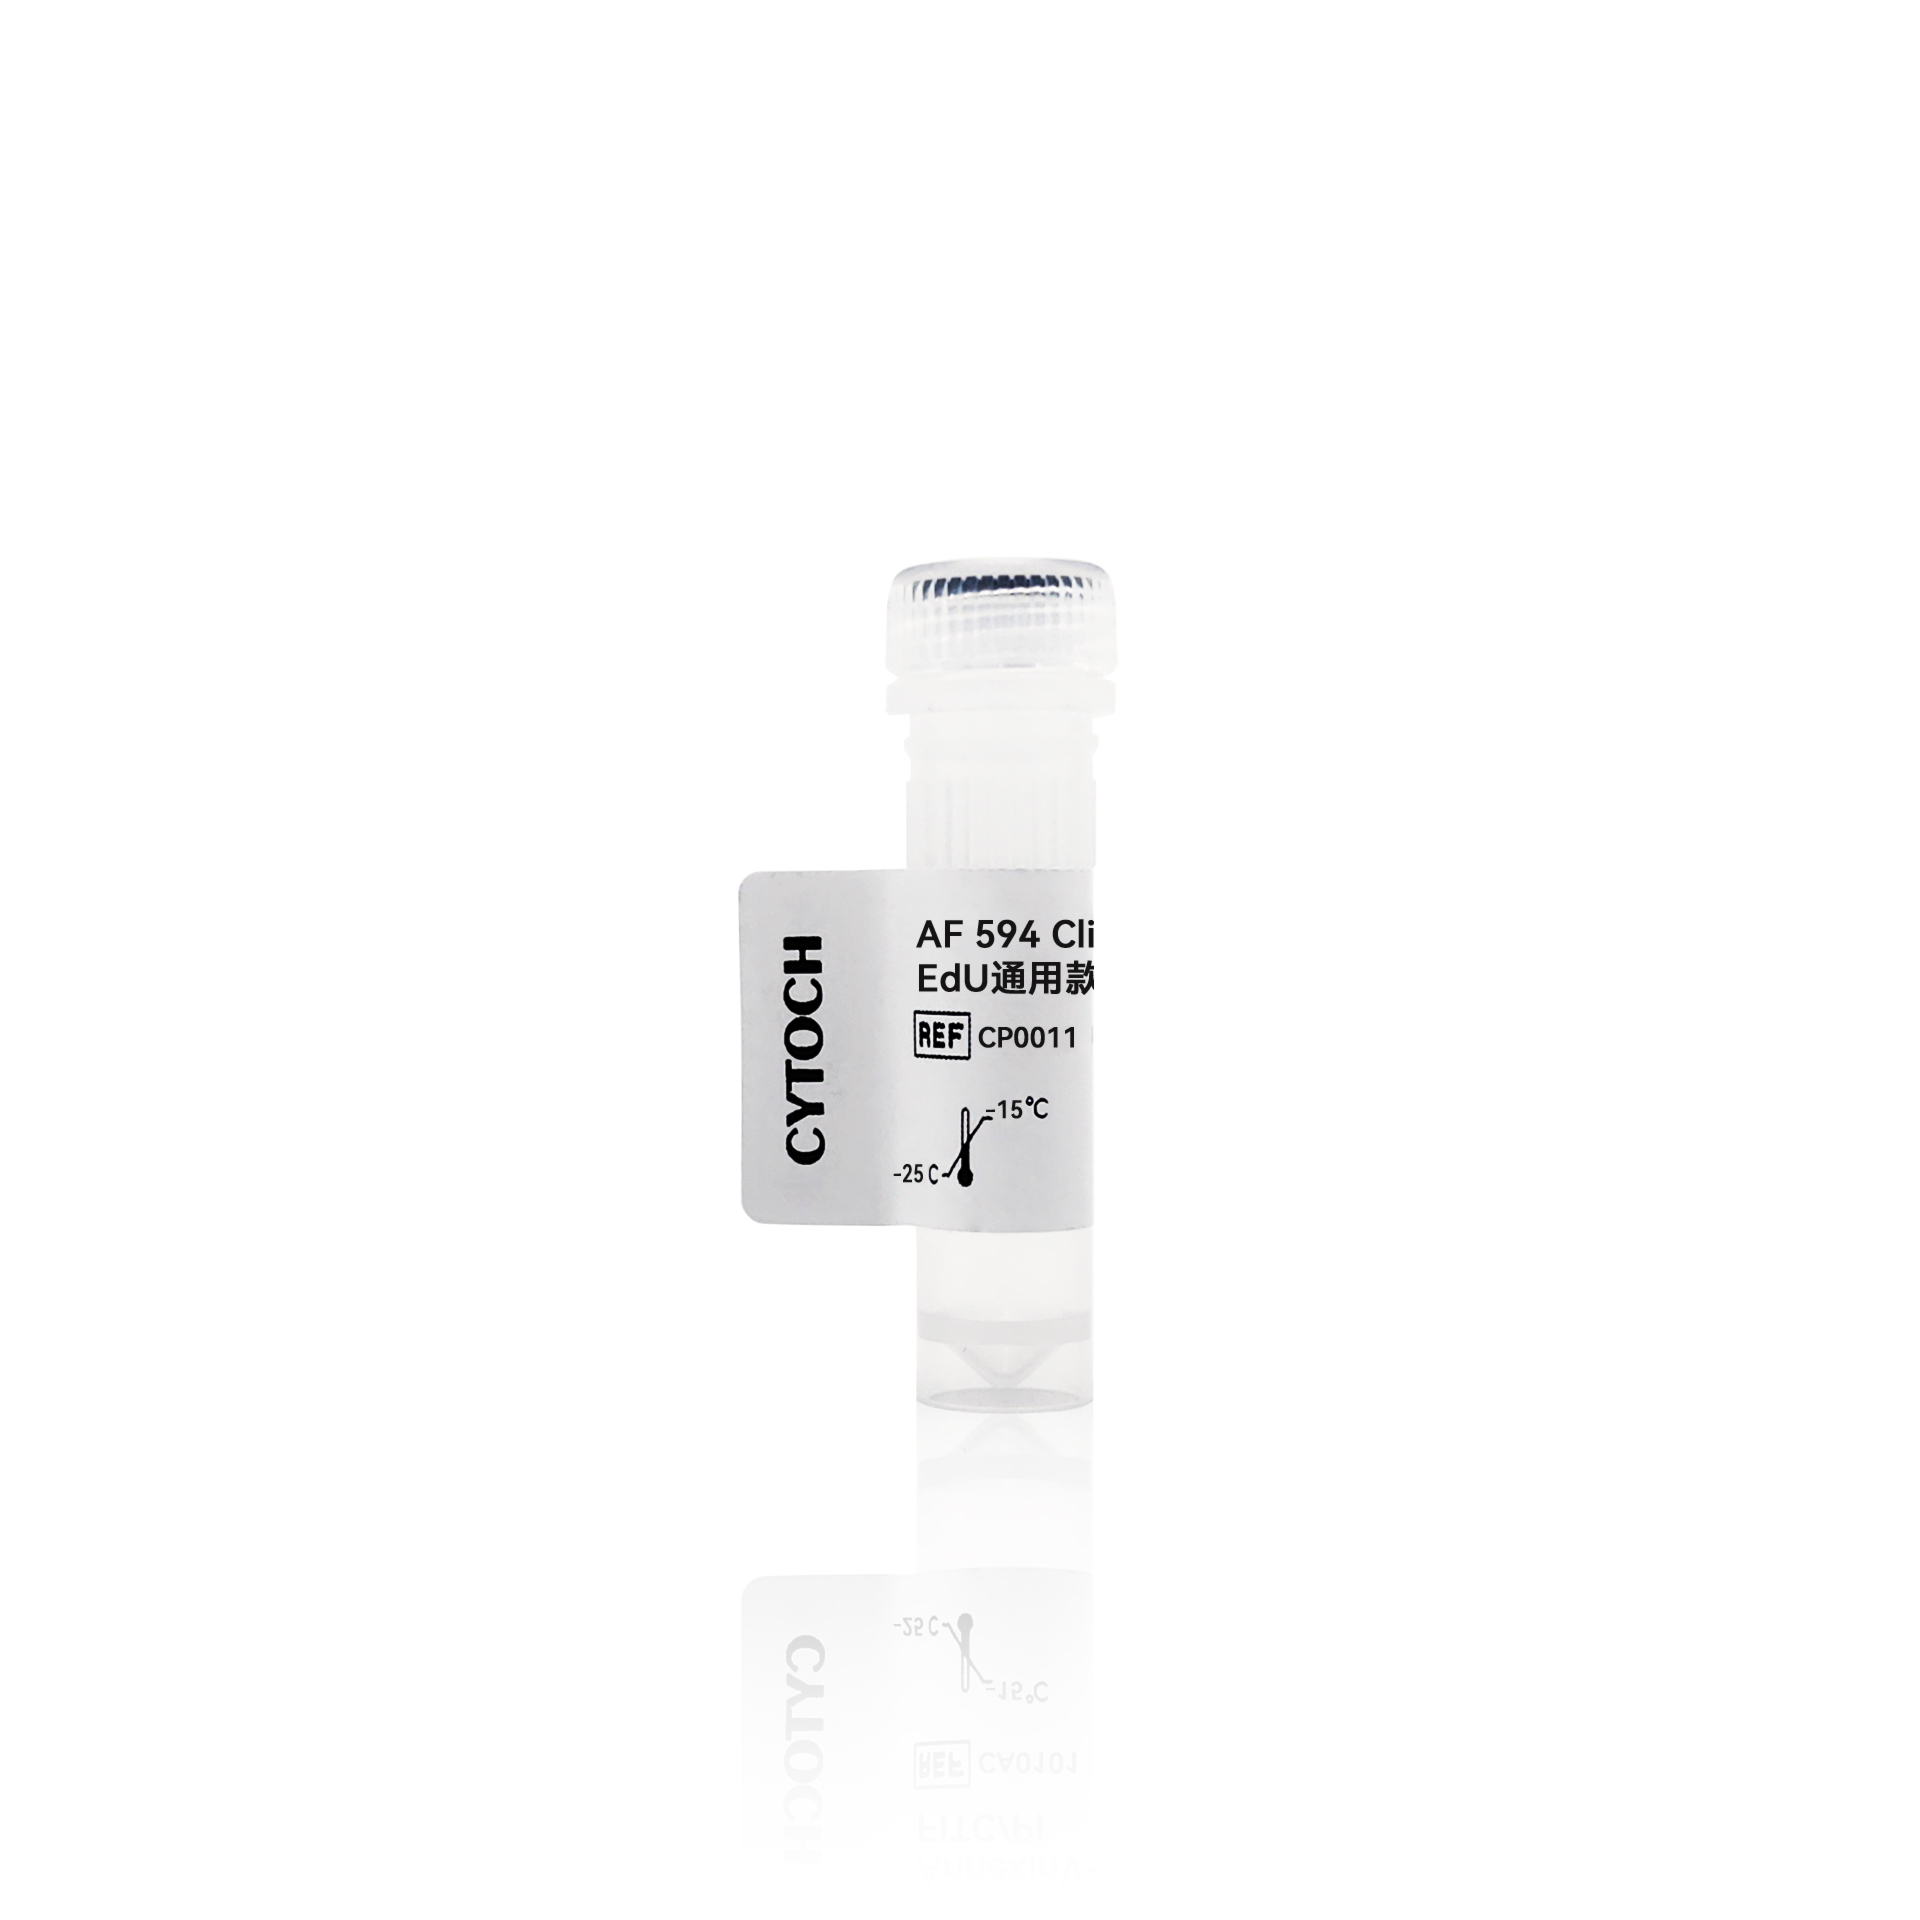 AF 594 Click-iT EdU通用款细胞增殖检测试剂盒（红色荧光）